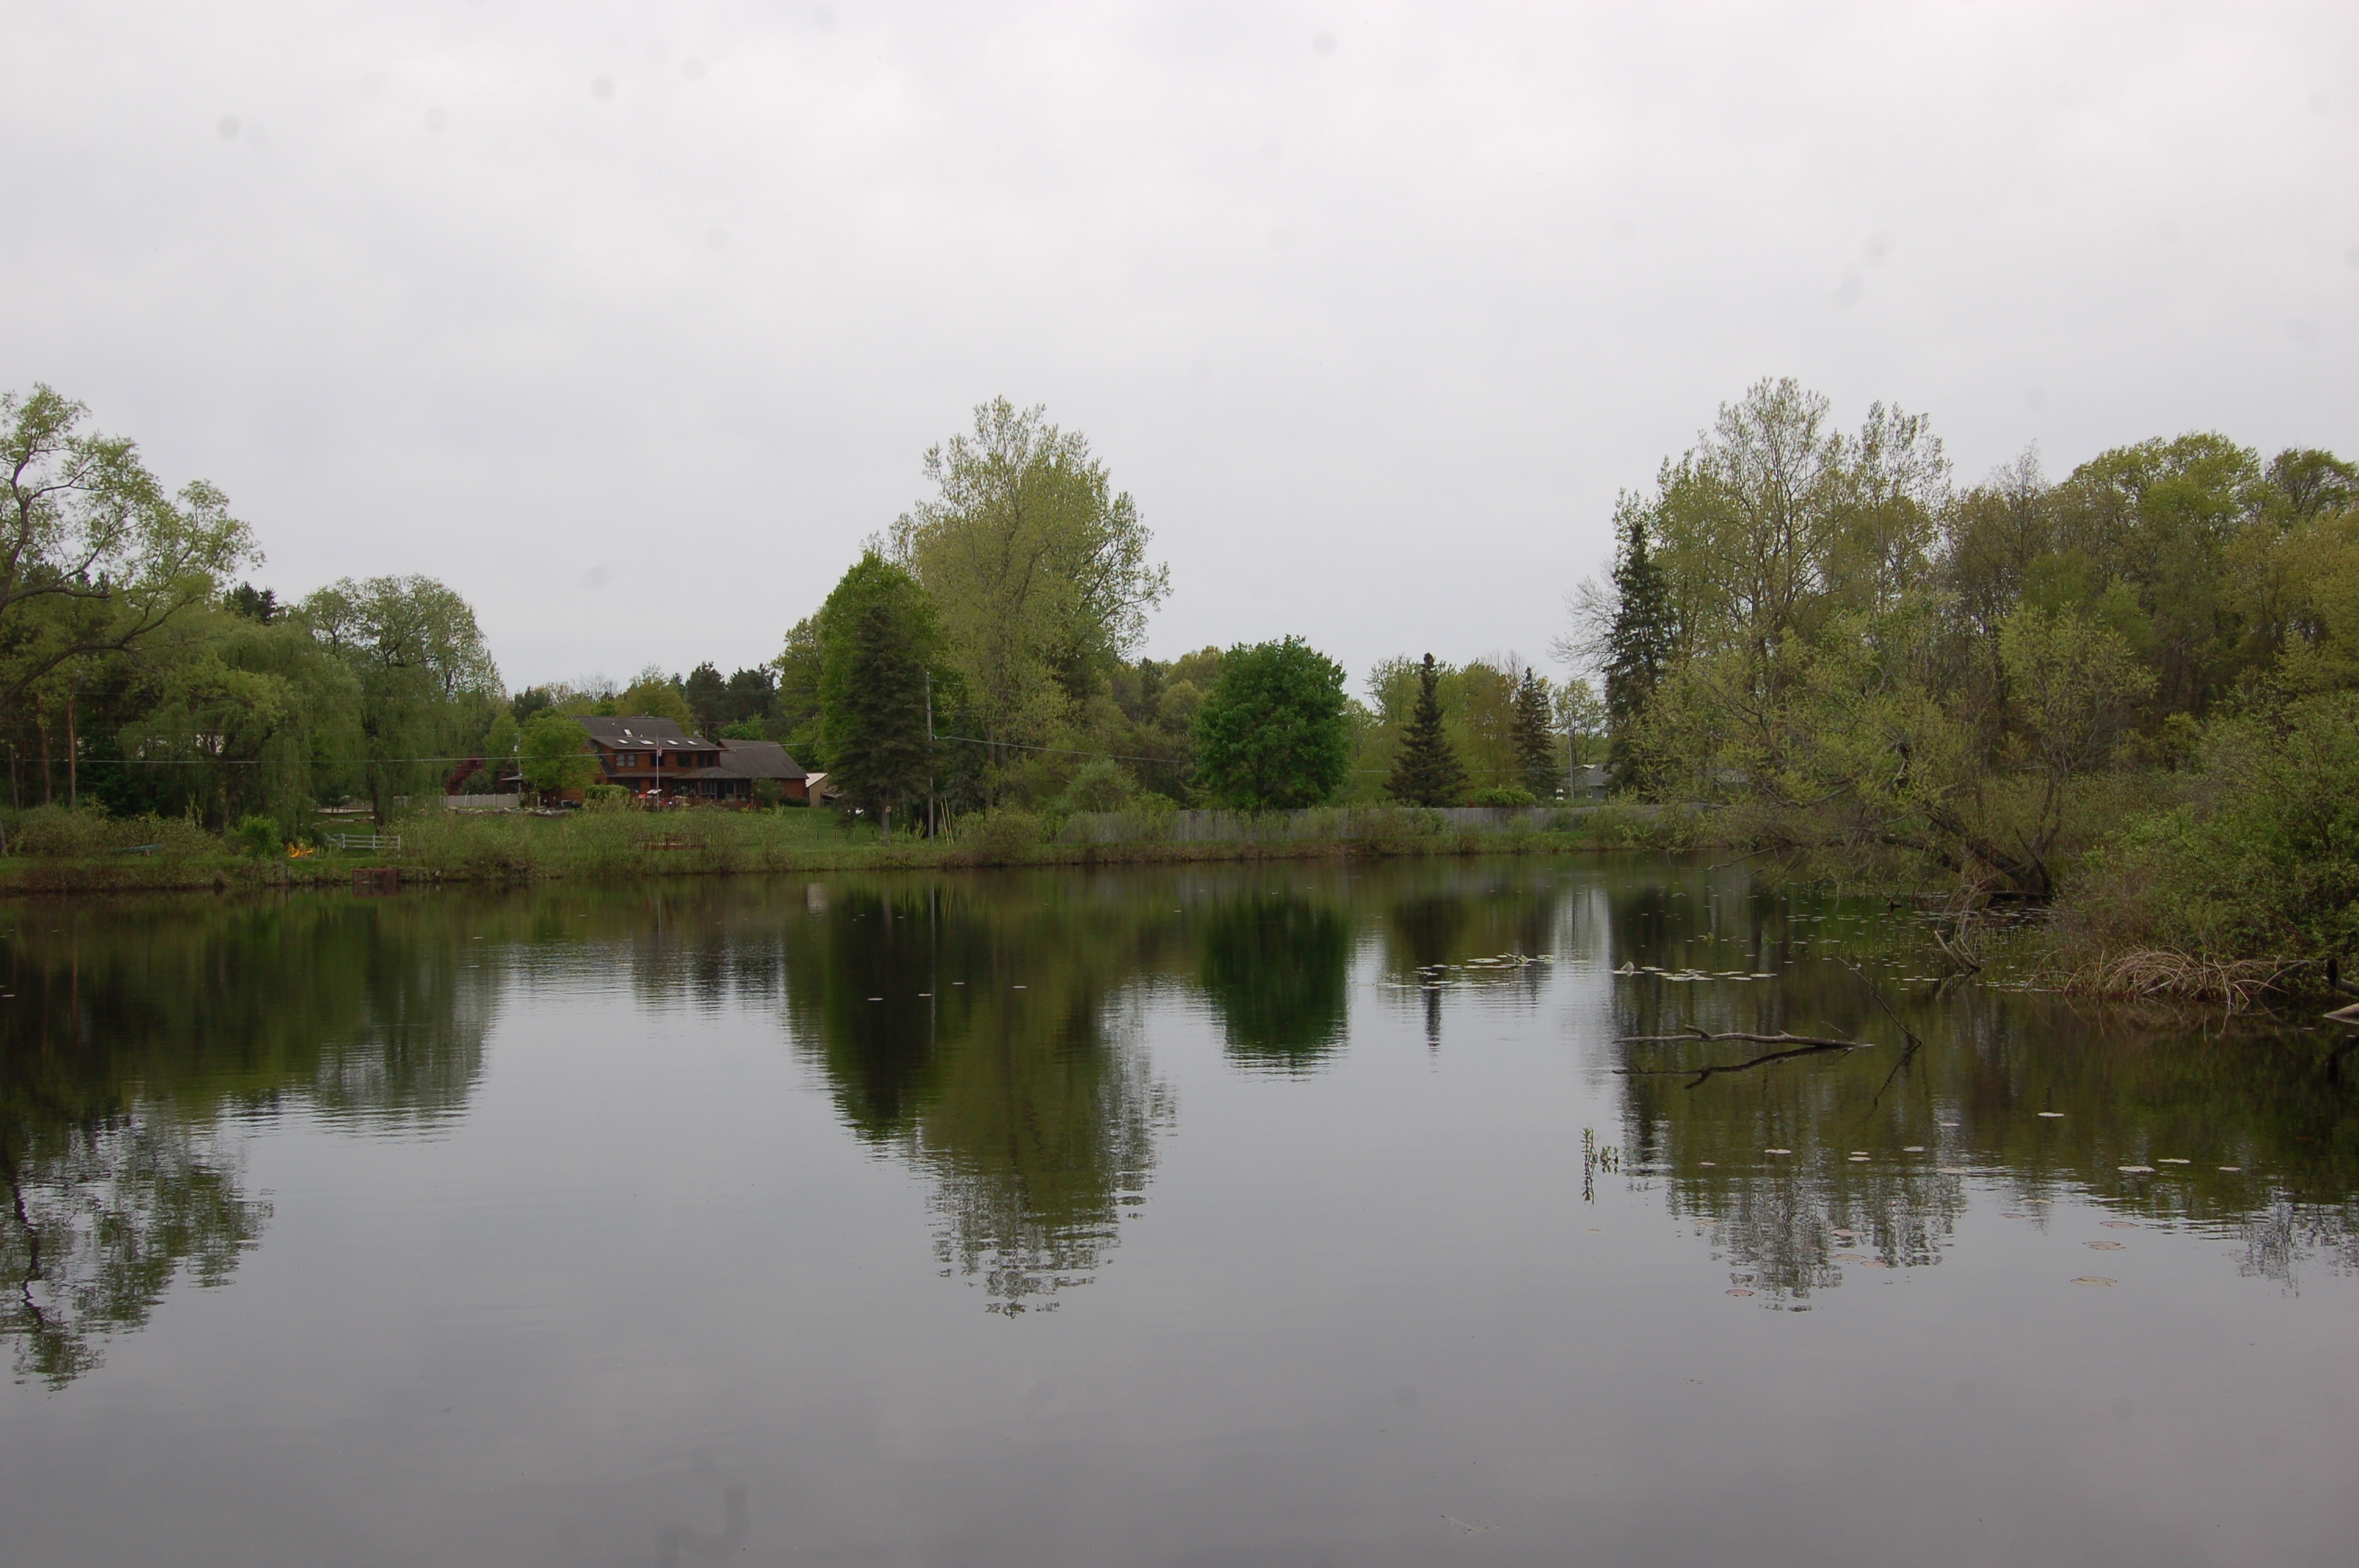 House reflection Pickerel Lake